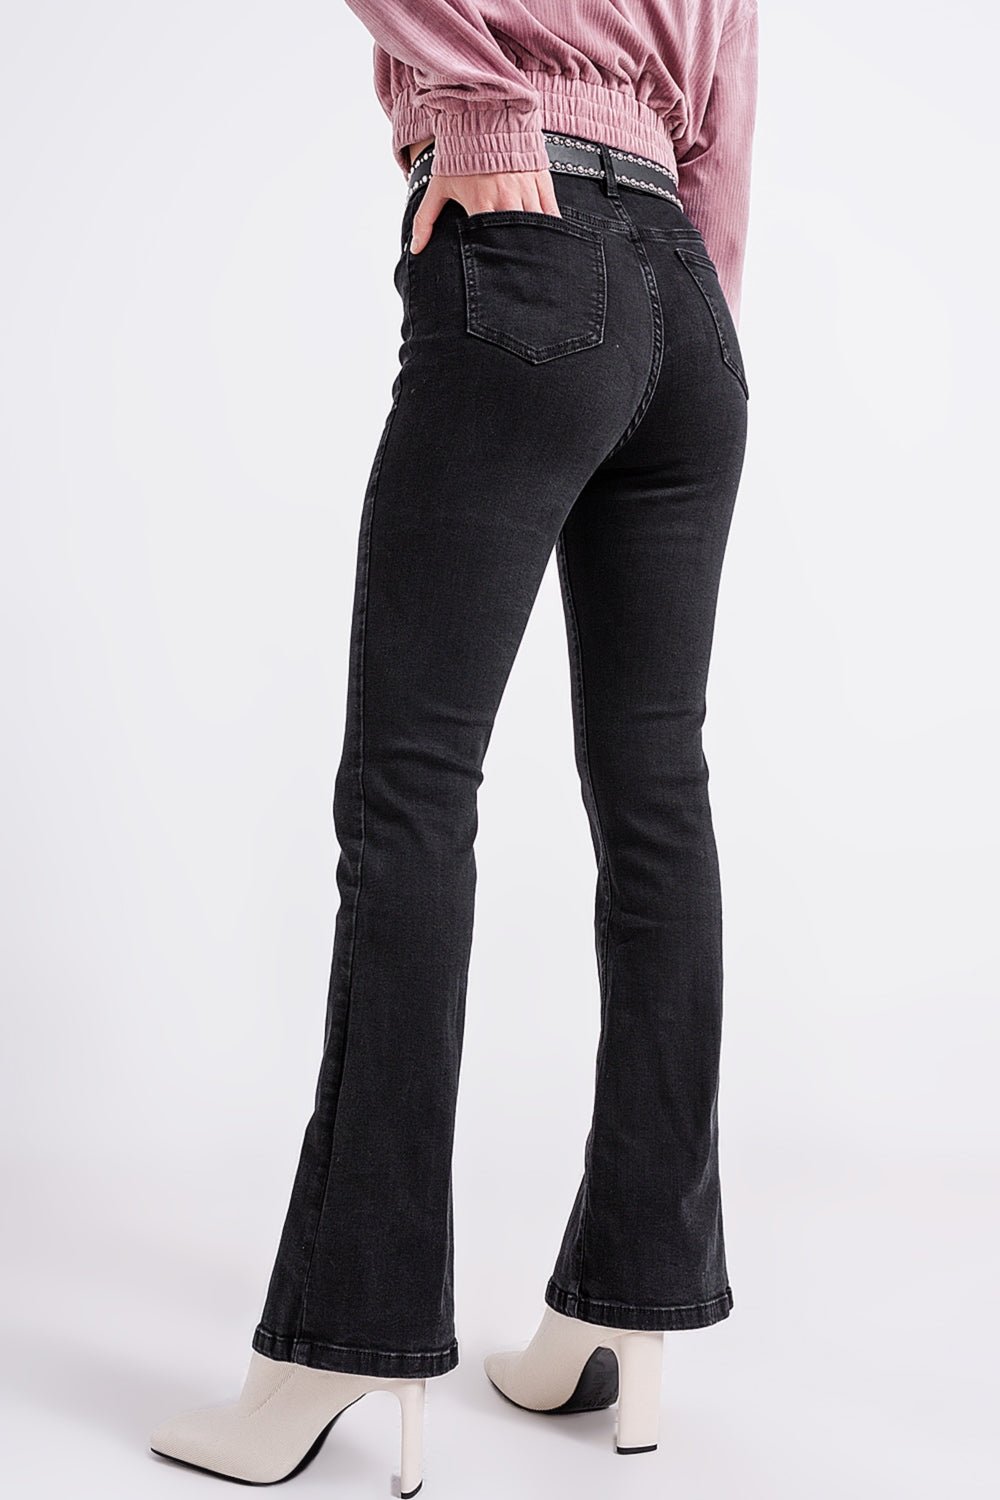 Flare Black Jeans With Split Hem - Mack & Harvie